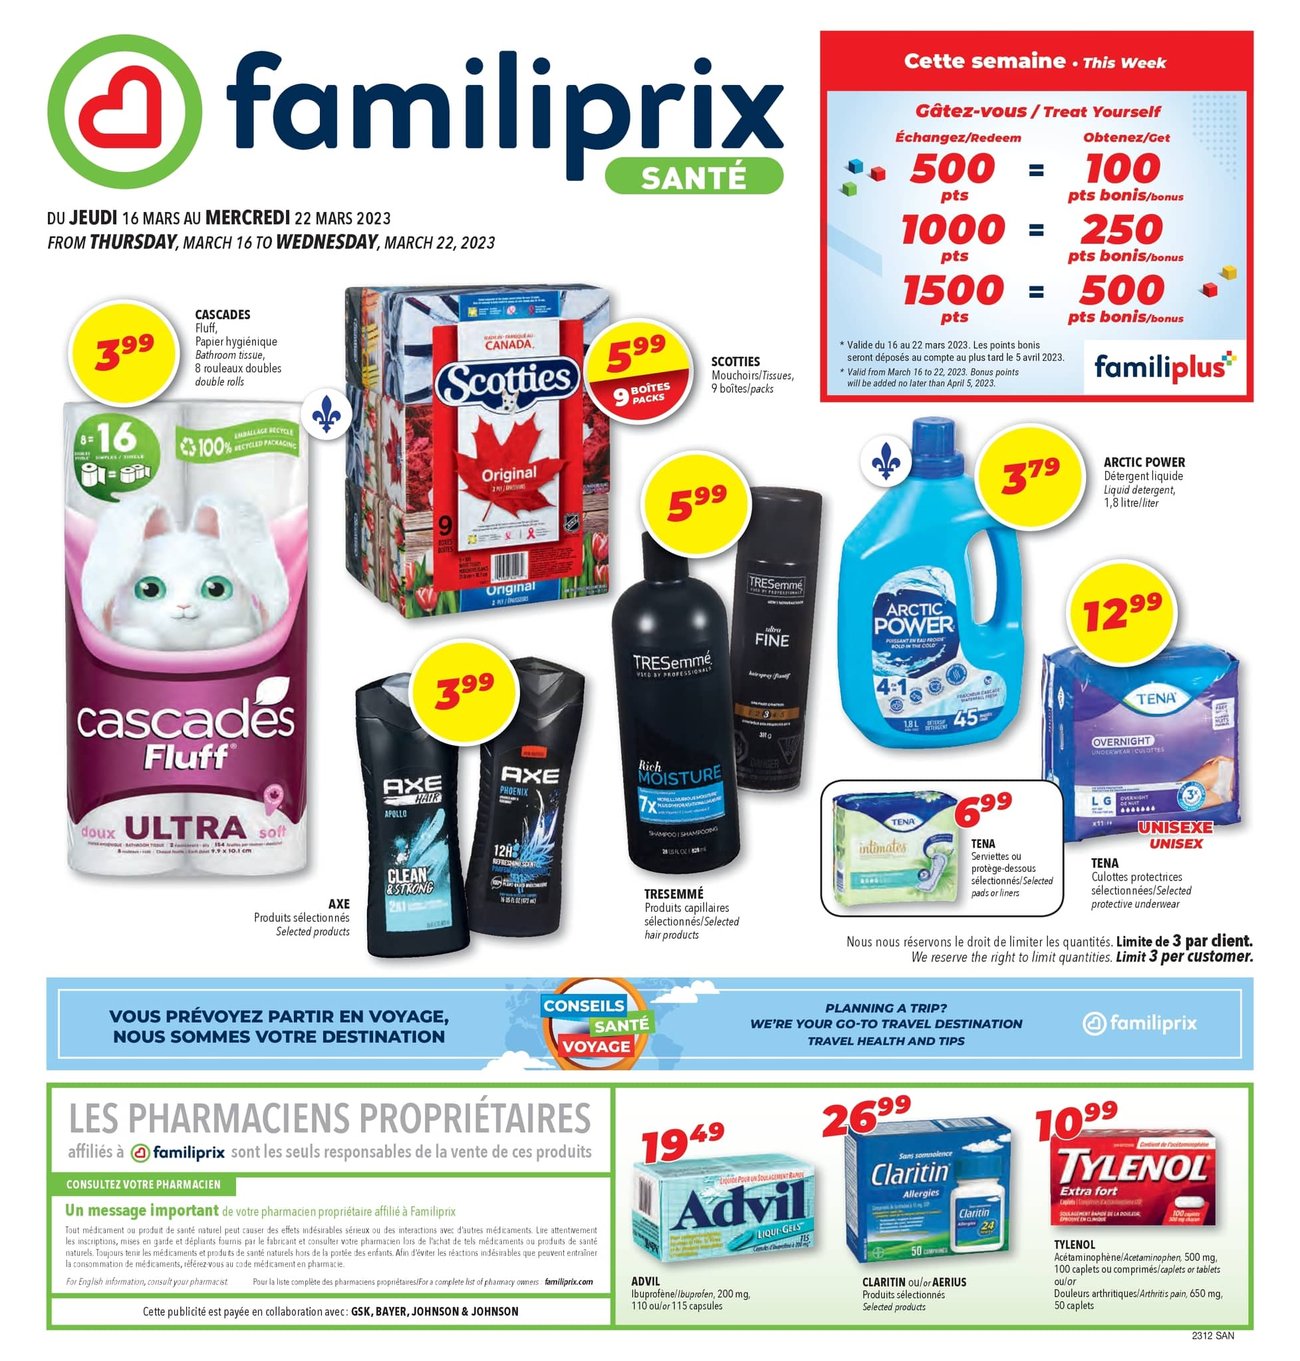 Familiprix - Health - Page 1